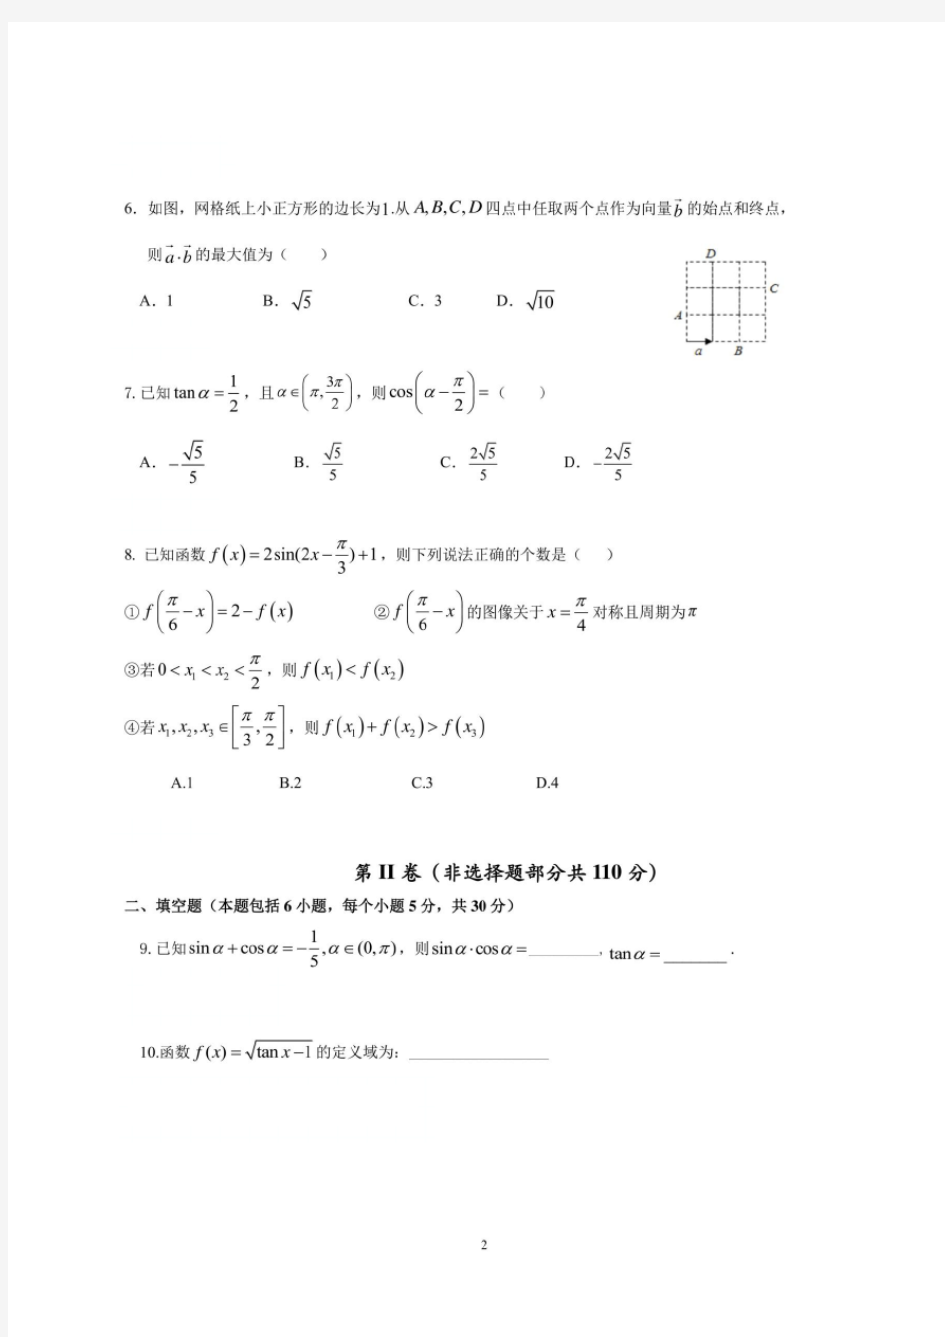 北京市人大附中朝阳学校2019~2020学年度第二学期高一年级统练数学试题